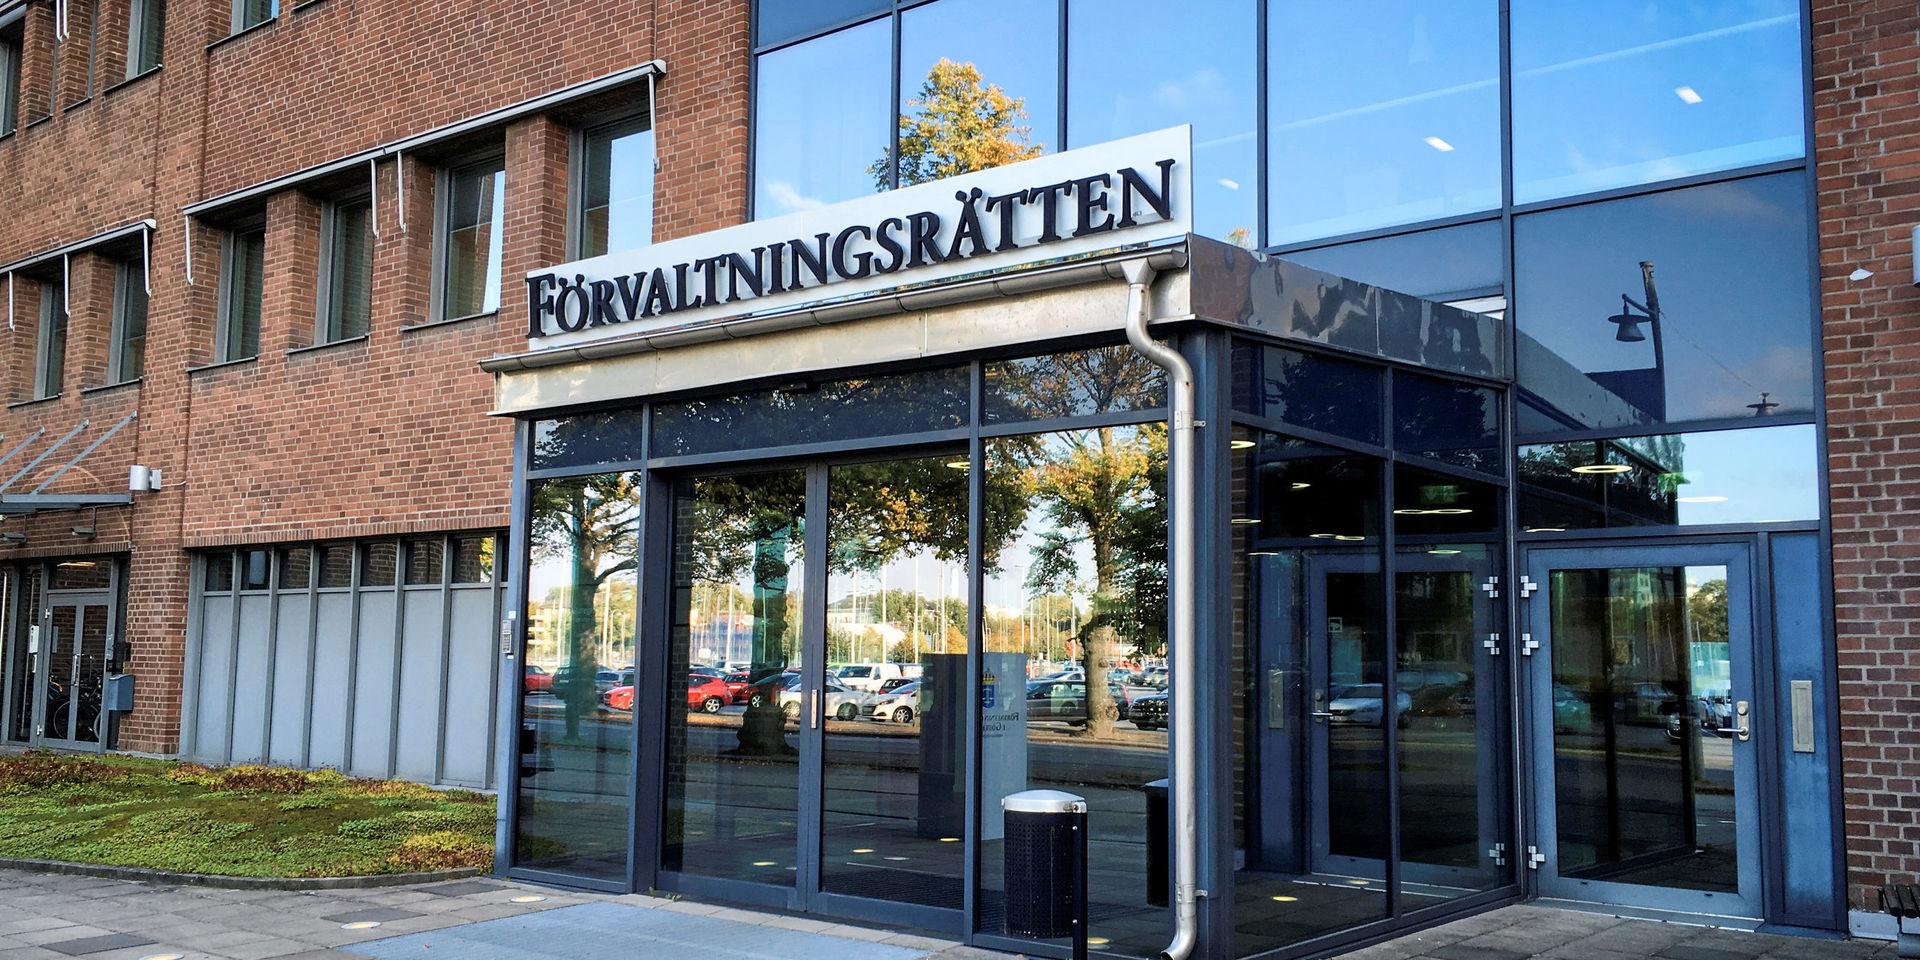 Förvaltningsrätten i Göteborg har tidigare i år fått kritik från justitieombudsmannen för att migrationsmålen avgörs för långsamt, skriver debattörerna.